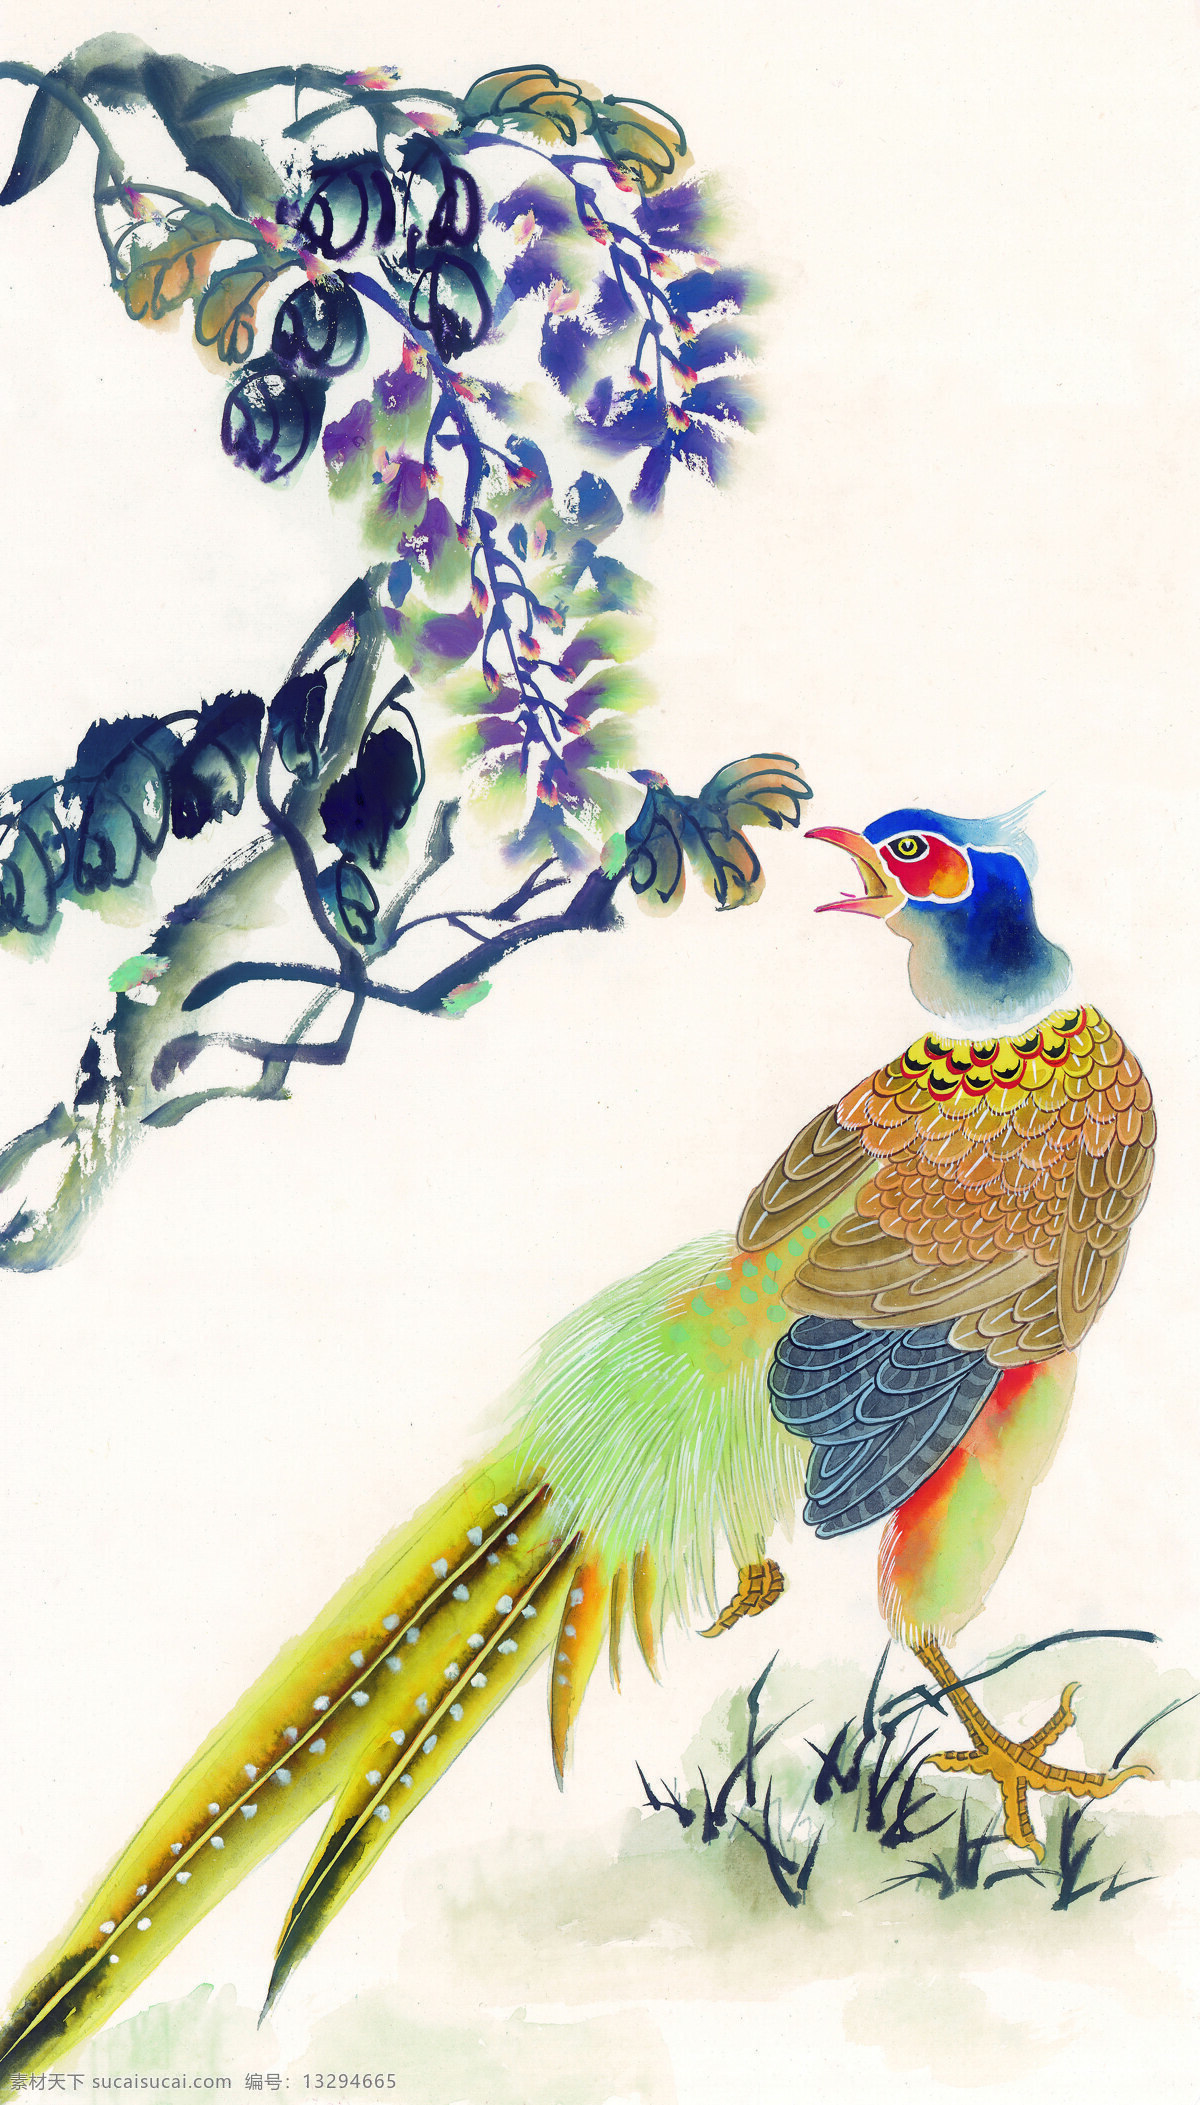 国画 中国风 古典 古画 高清 文墨 水墨 画 传神 设计素材 鸟 神鸟 羽毛 文化艺术 美术绘画